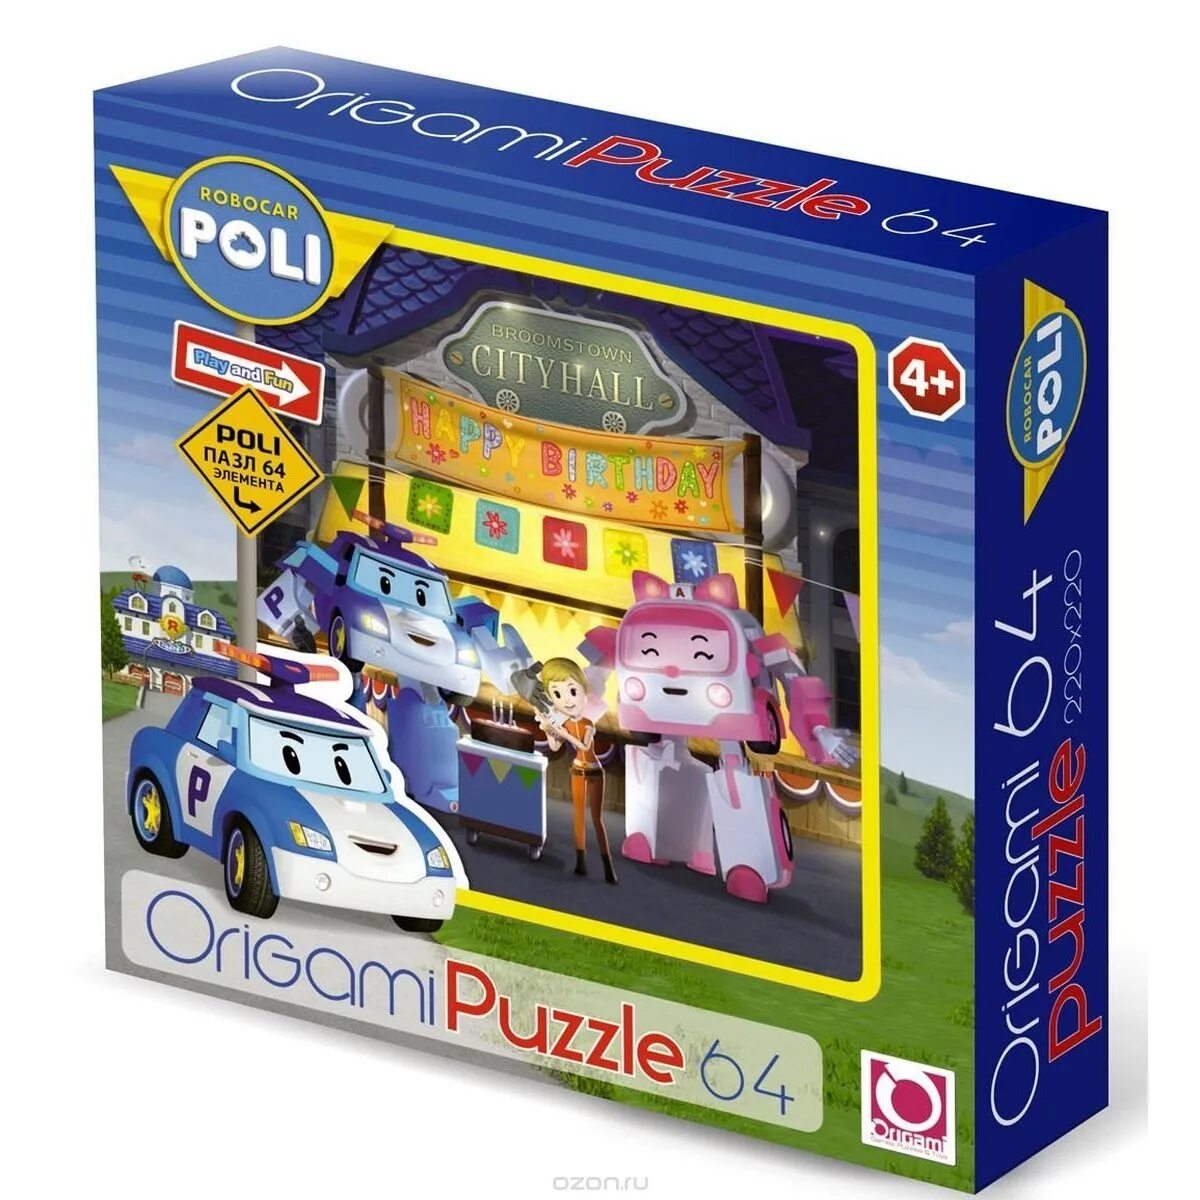 Головоломки поли. Пазл Origami Robocar Poli день рождения Джин (05904), 64 дет.. Пазл Origami Robocar. Робокар Поли Джин игрушка. Пазл "Robocar", 64 элемента.